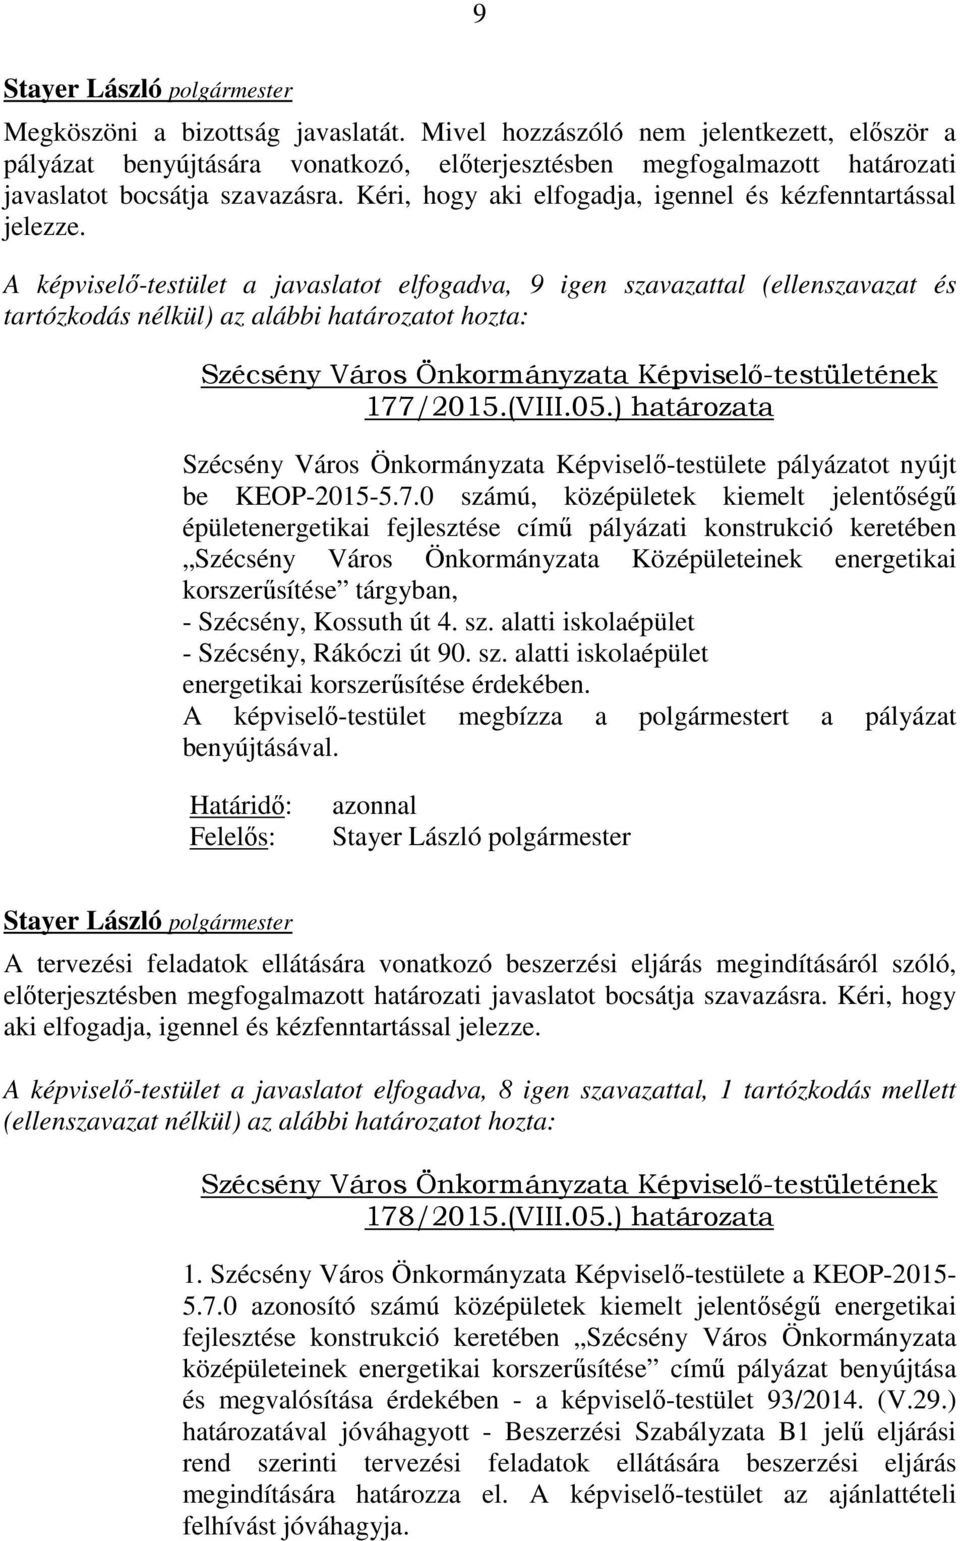 A képviselő-testület a javaslatot elfogadva, 9 igen szavazattal (ellenszavazat és tartózkodás nélkül) az alábbi határozatot hozta: Szécsény Város Önkormányzata Képviselő-testületének 177/2015.(VIII.